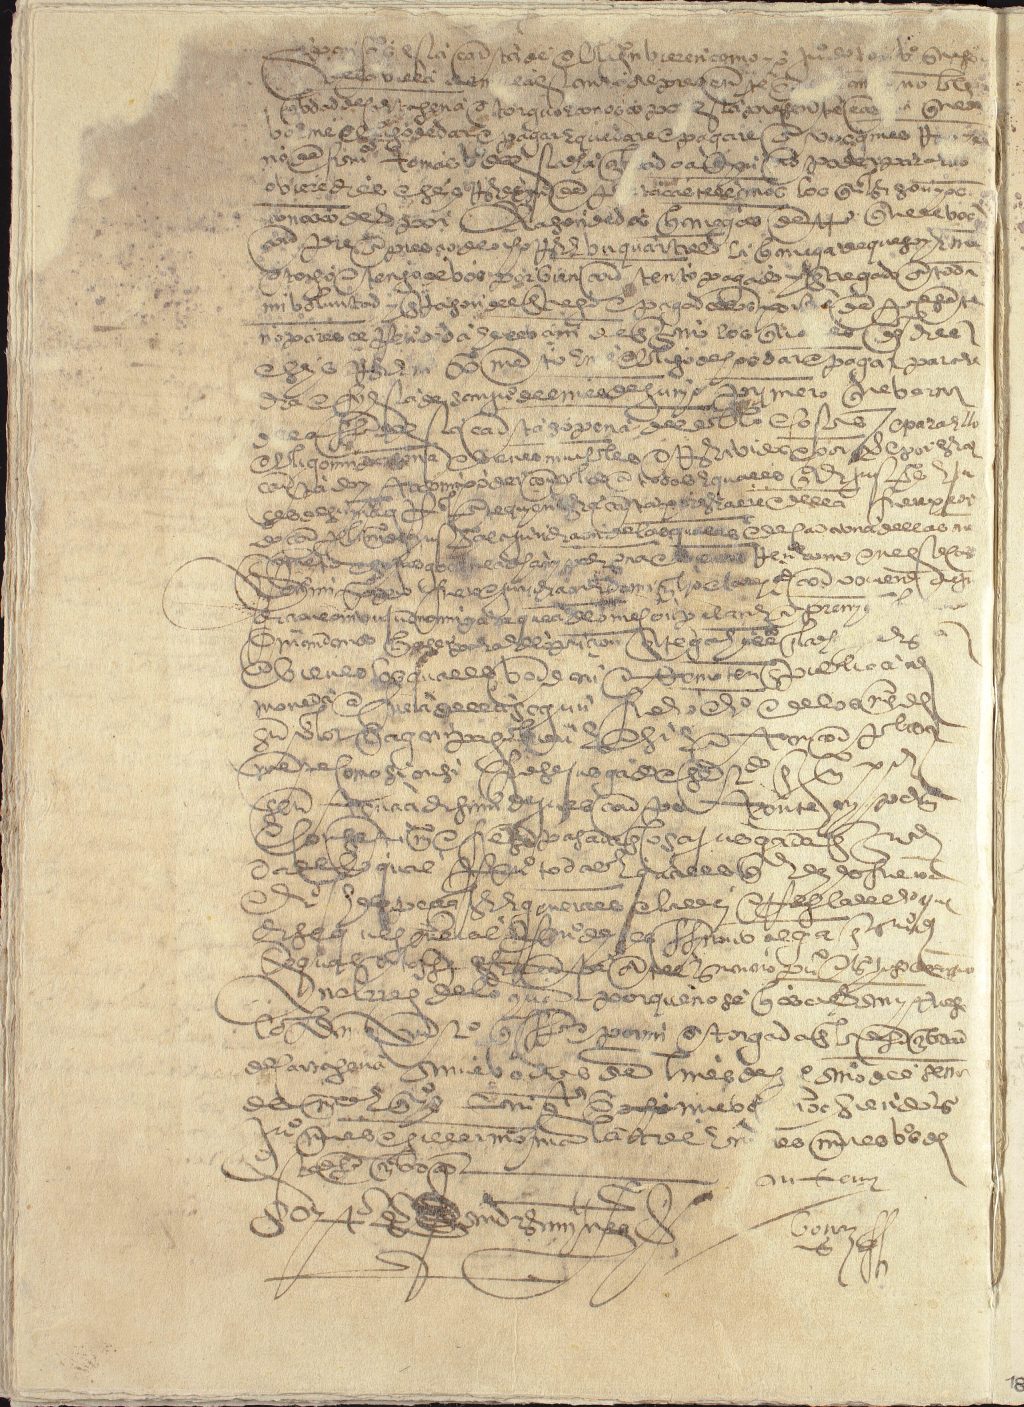 Obligación de pago de Juan Soto a favor de Ginés Rodríguez, yerno de Francisco Tomás, vecinos de Cartagena, por dieciséis reales y medio de plata castellanos.